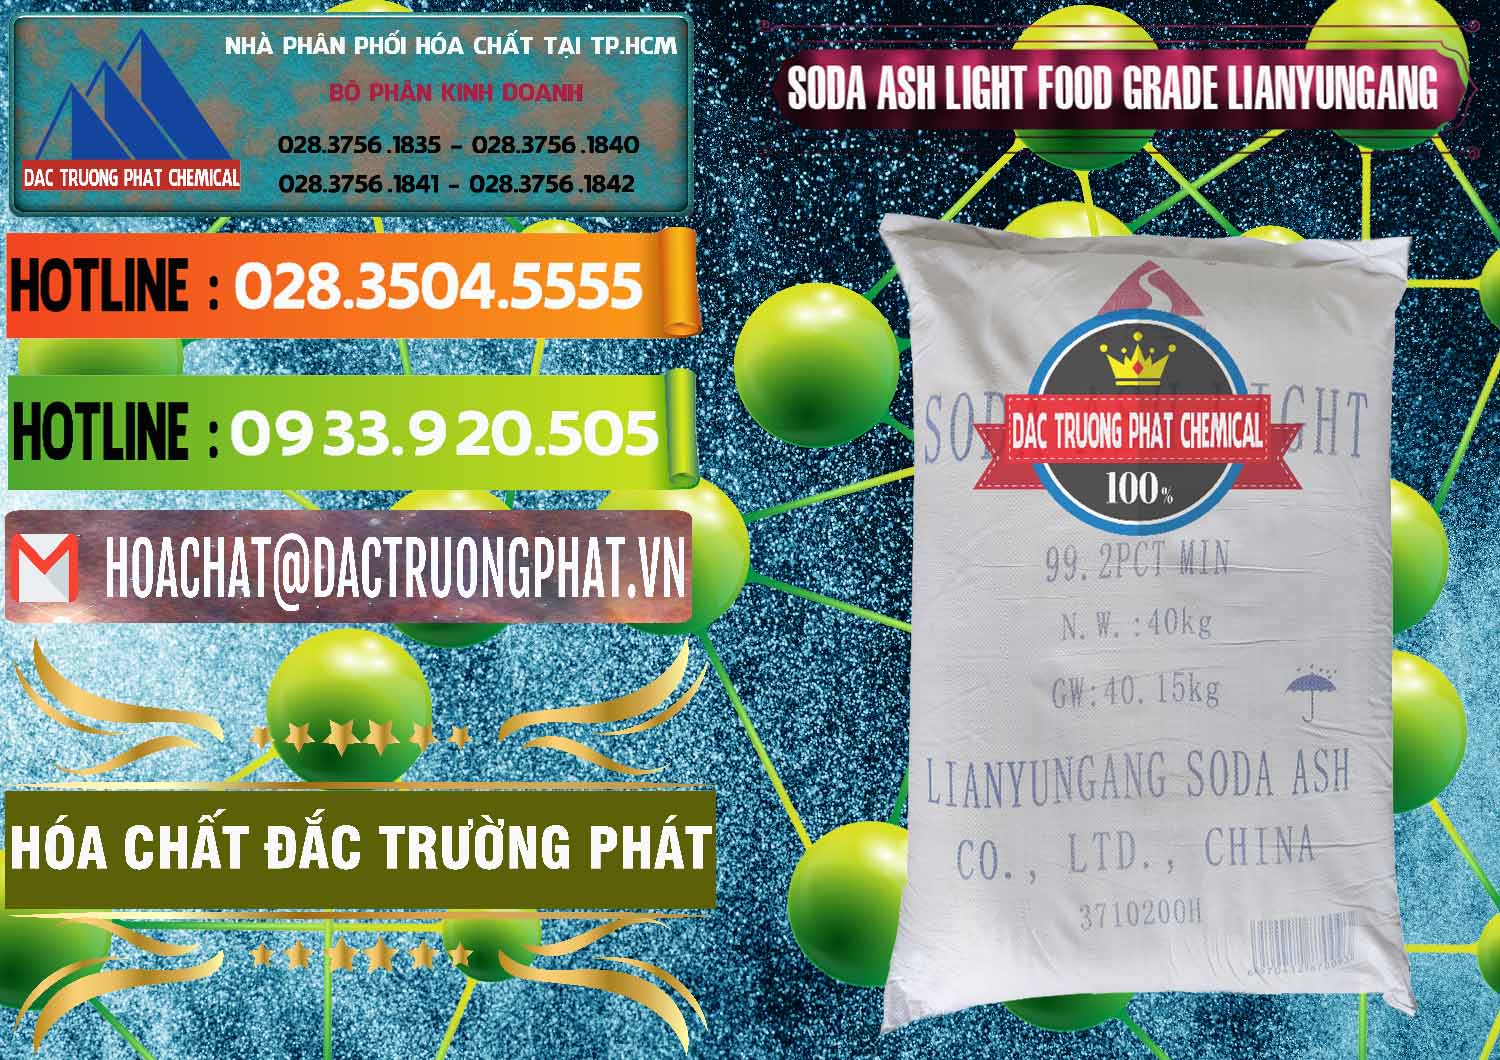 Cty phân phối và bán Soda Ash Light - NA2CO3 Food Grade Lianyungang Trung Quốc - 0222 - Cty phân phối & cung cấp hóa chất tại TP.HCM - cungcaphoachat.com.vn